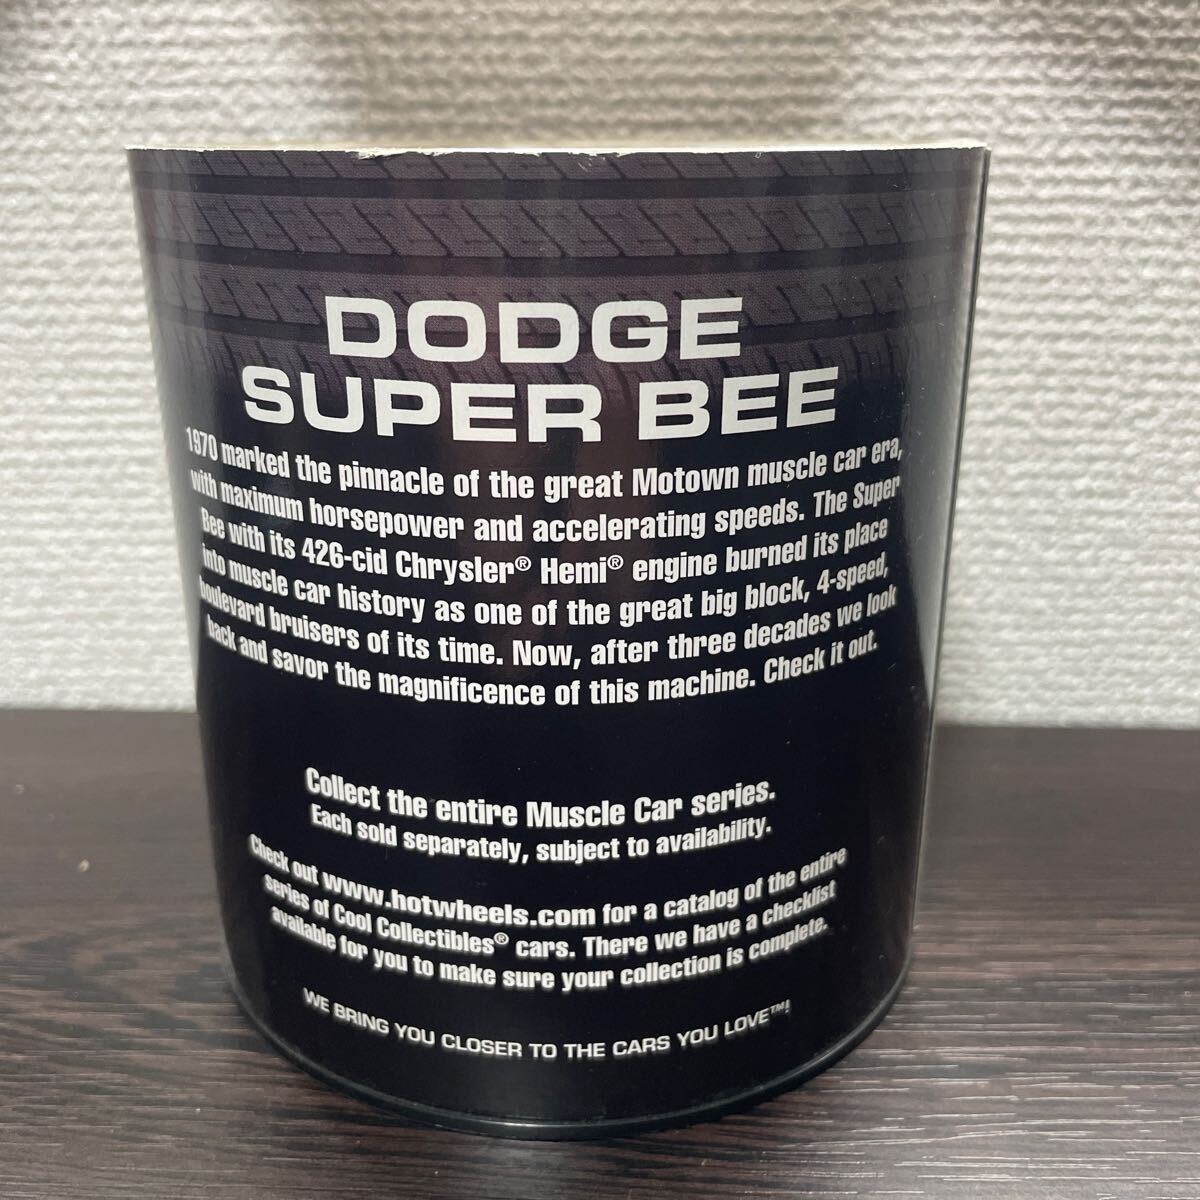 激レア 新品未開封 ホットウィール ダッジ スーパービー 15,000台限定 Hot Wheels Dodge Super Bee Limited Edition 1 of 15,000